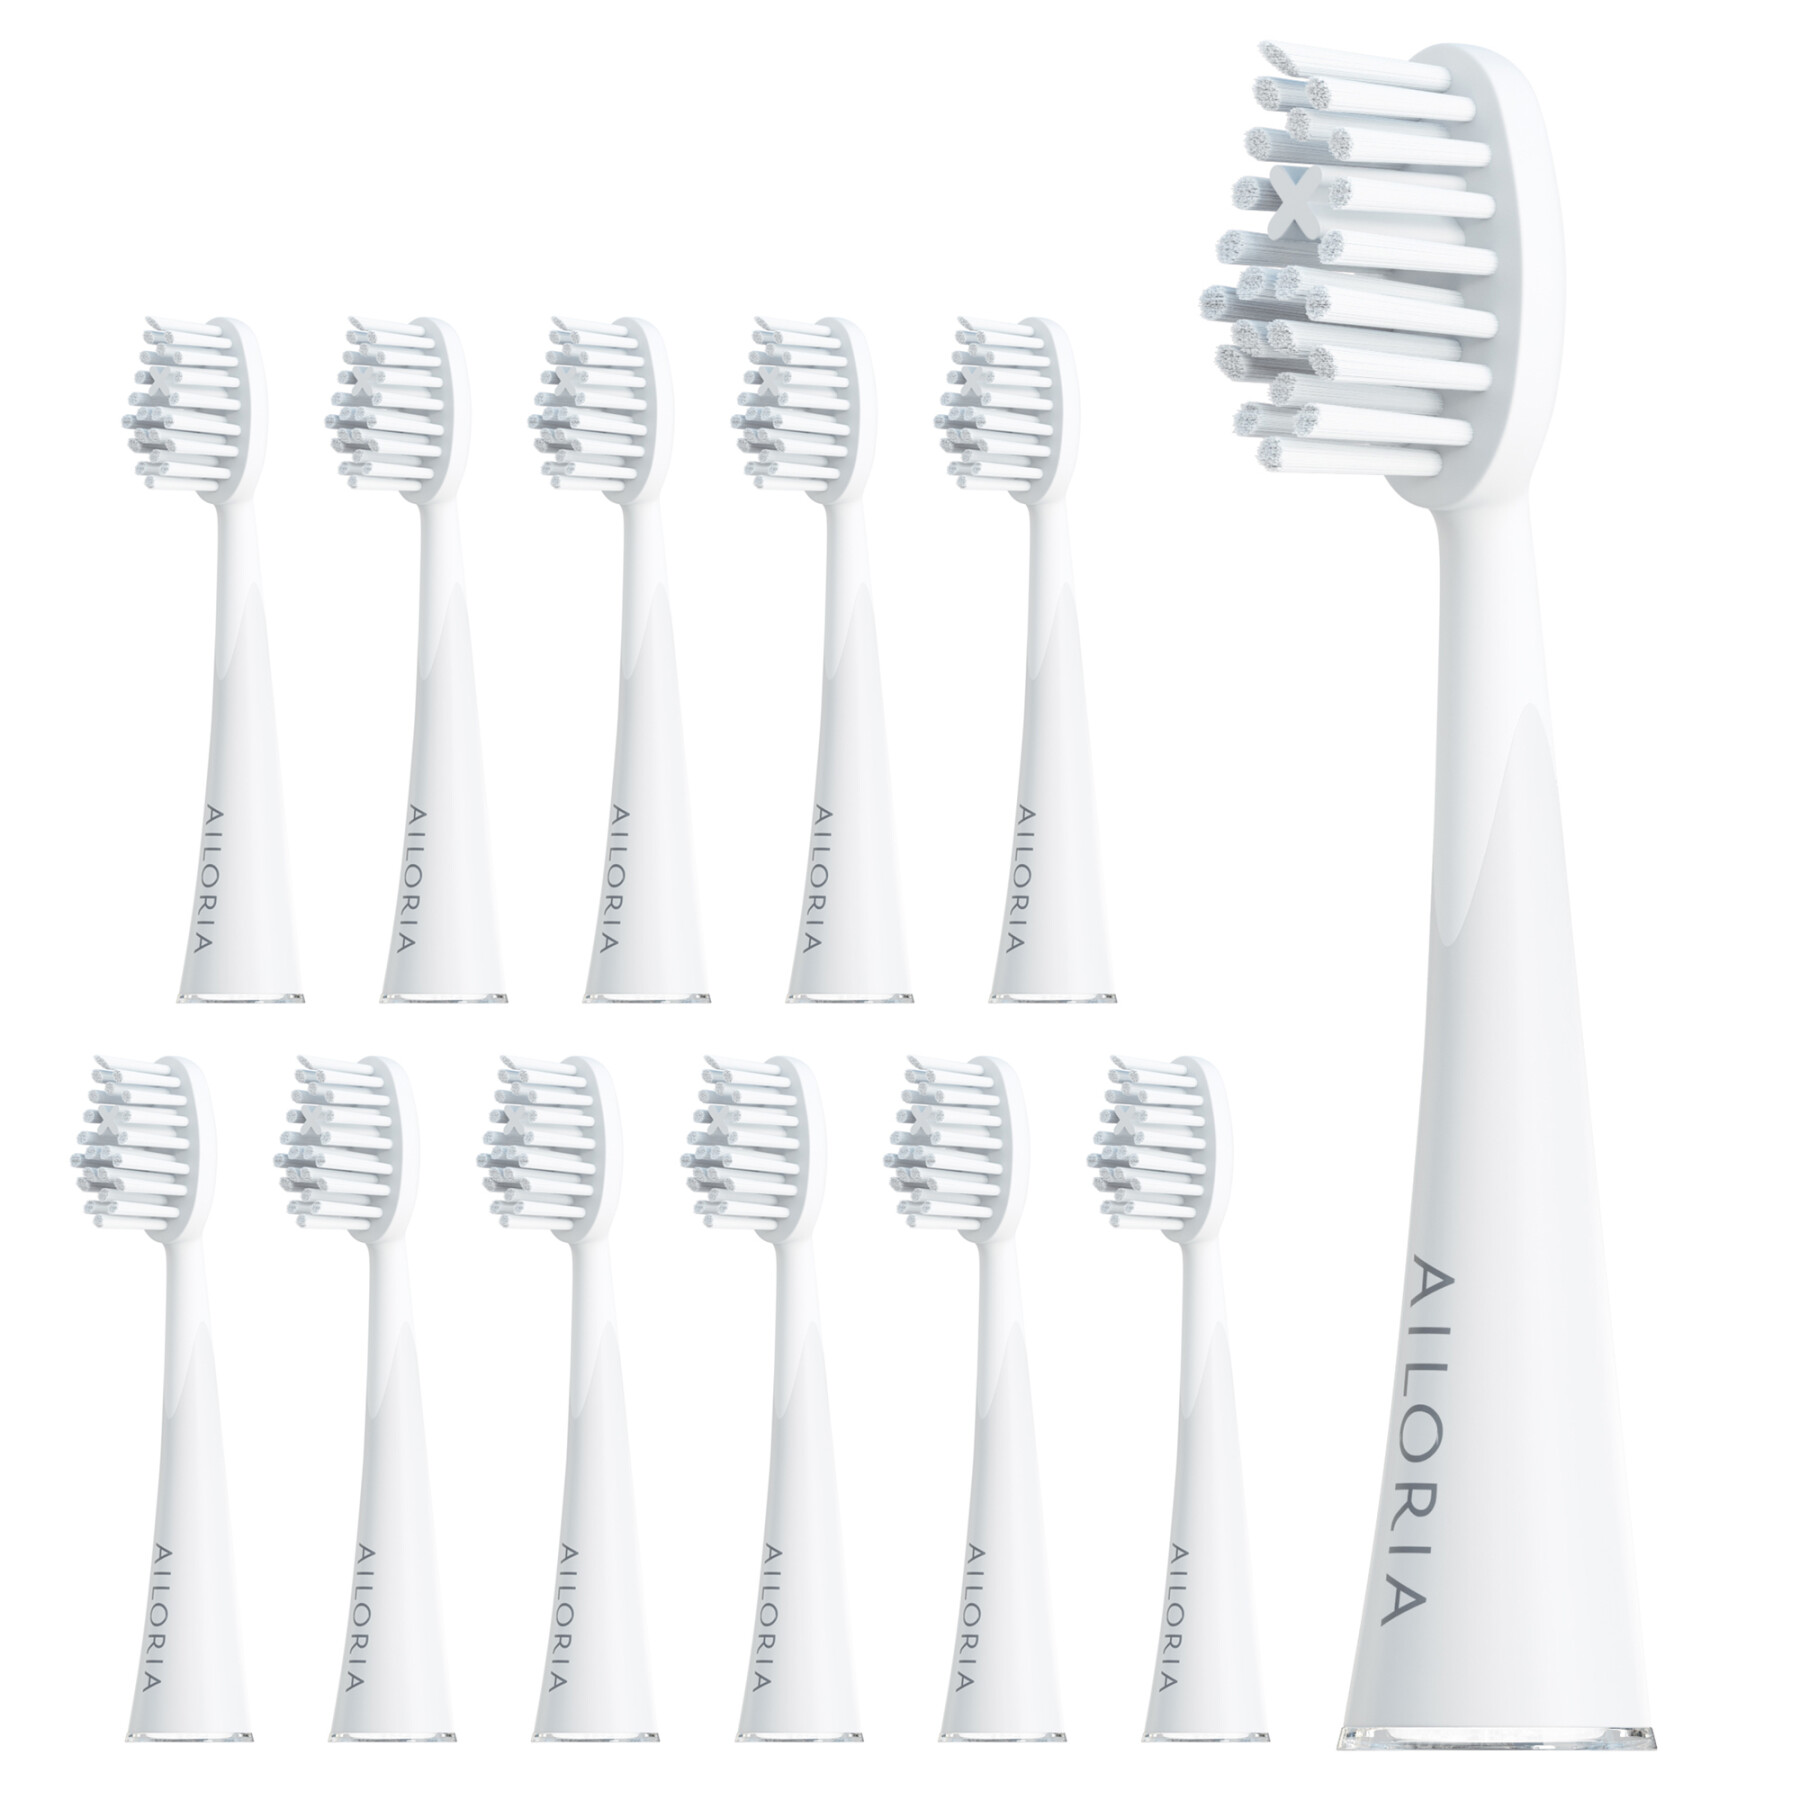 Embalagem de 6 cabeças de escova de dentes Ailoria Shine Bright